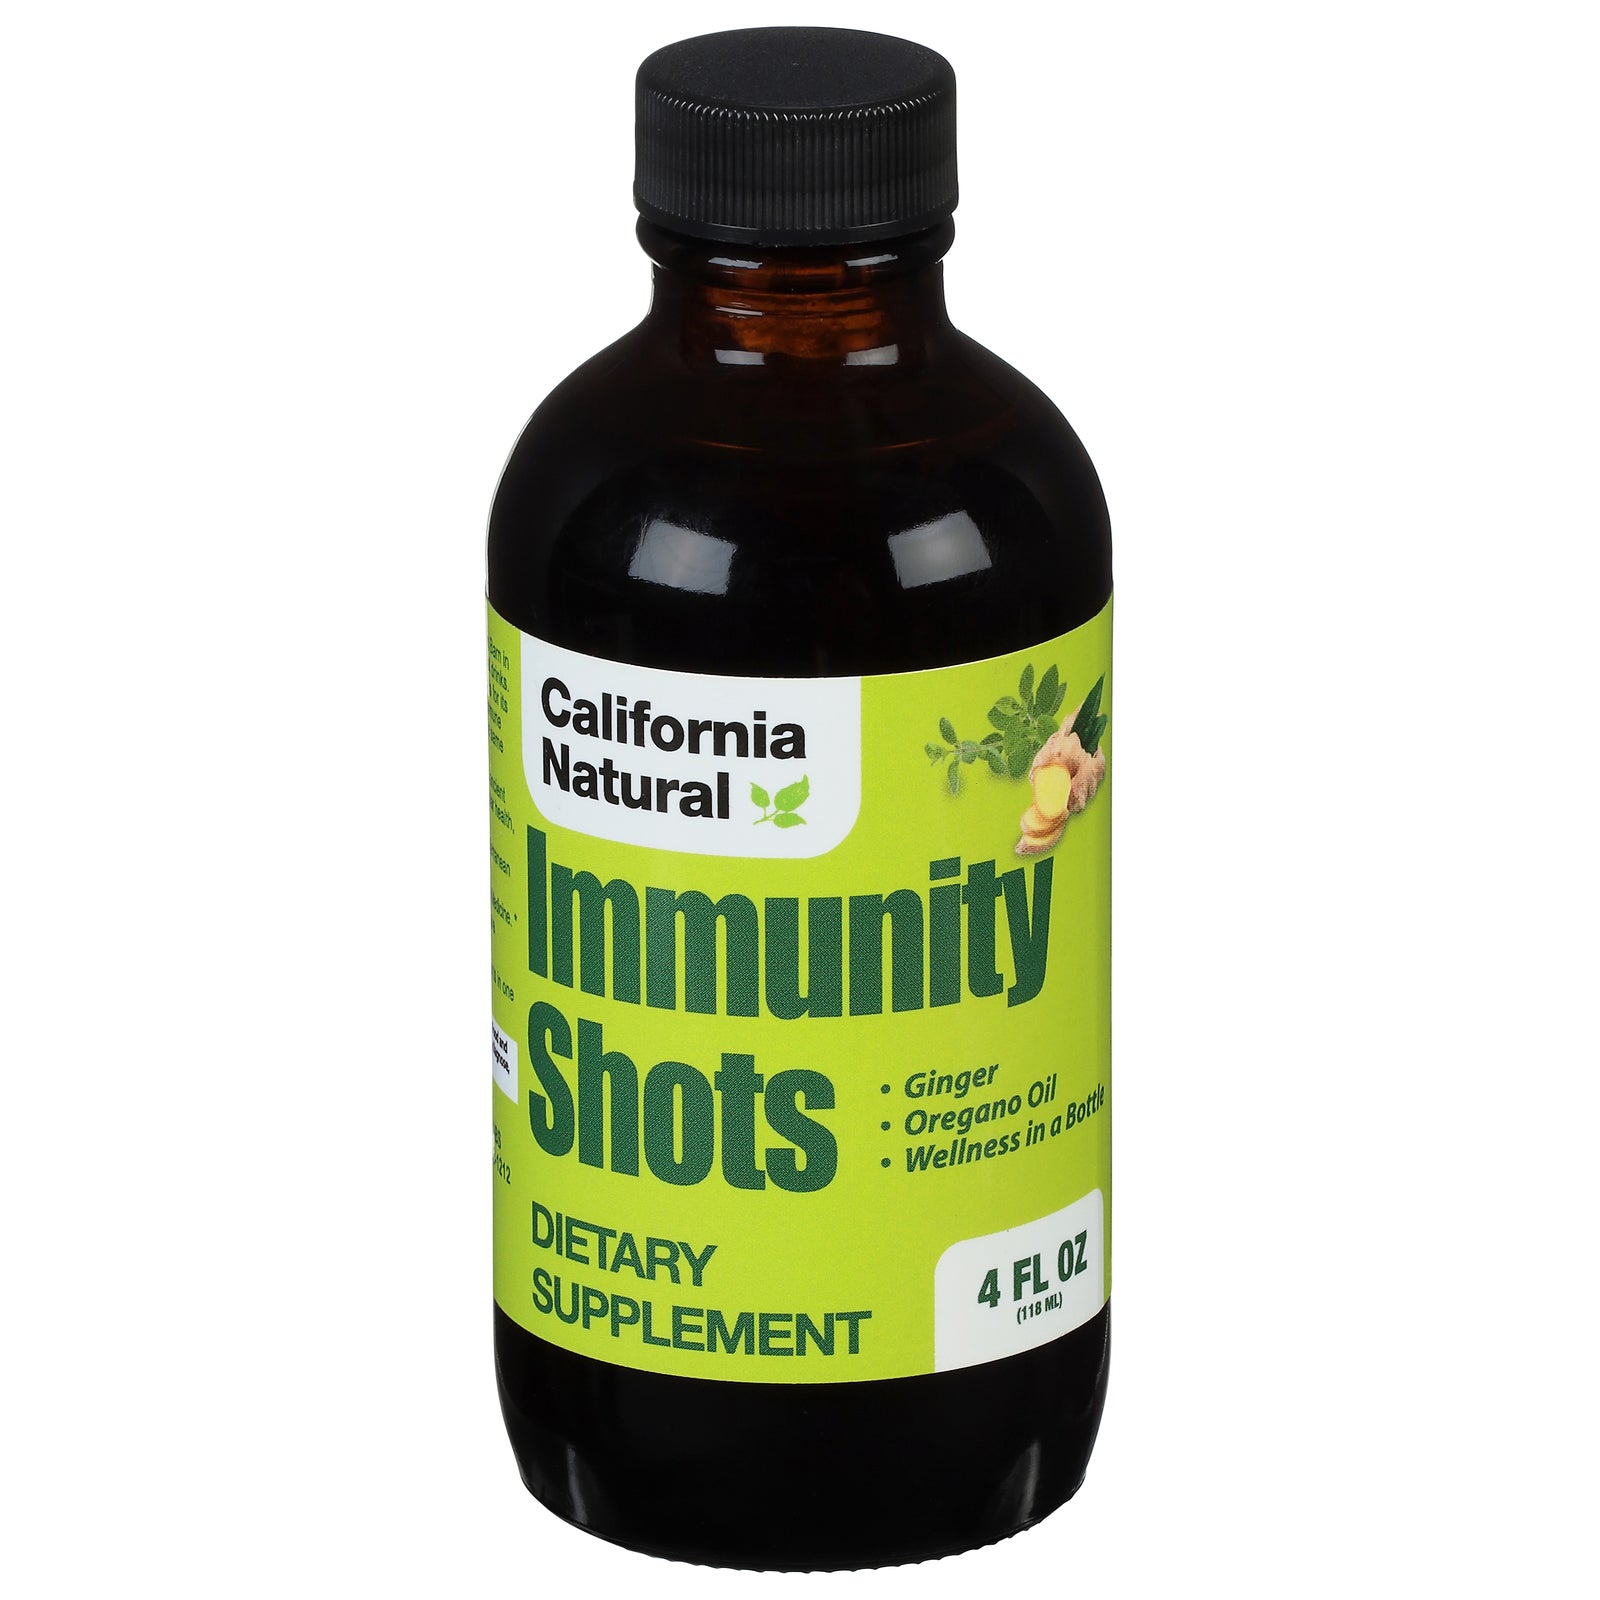 California Natural Immunity Shots - 4 Fl Oz